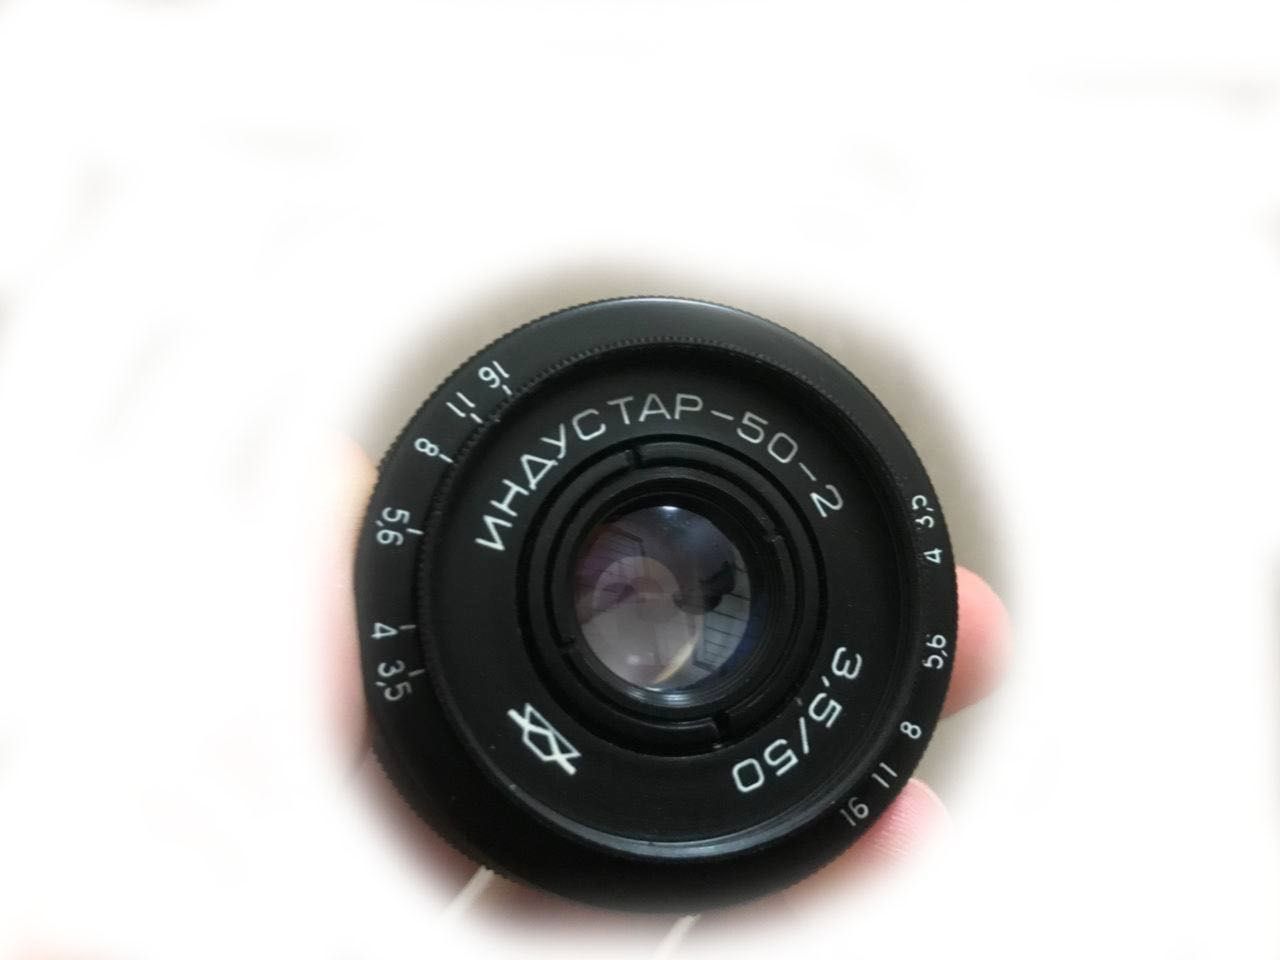 Дзеркальный фотоаппарат Canon 700D с объективом 18-55 IS STM